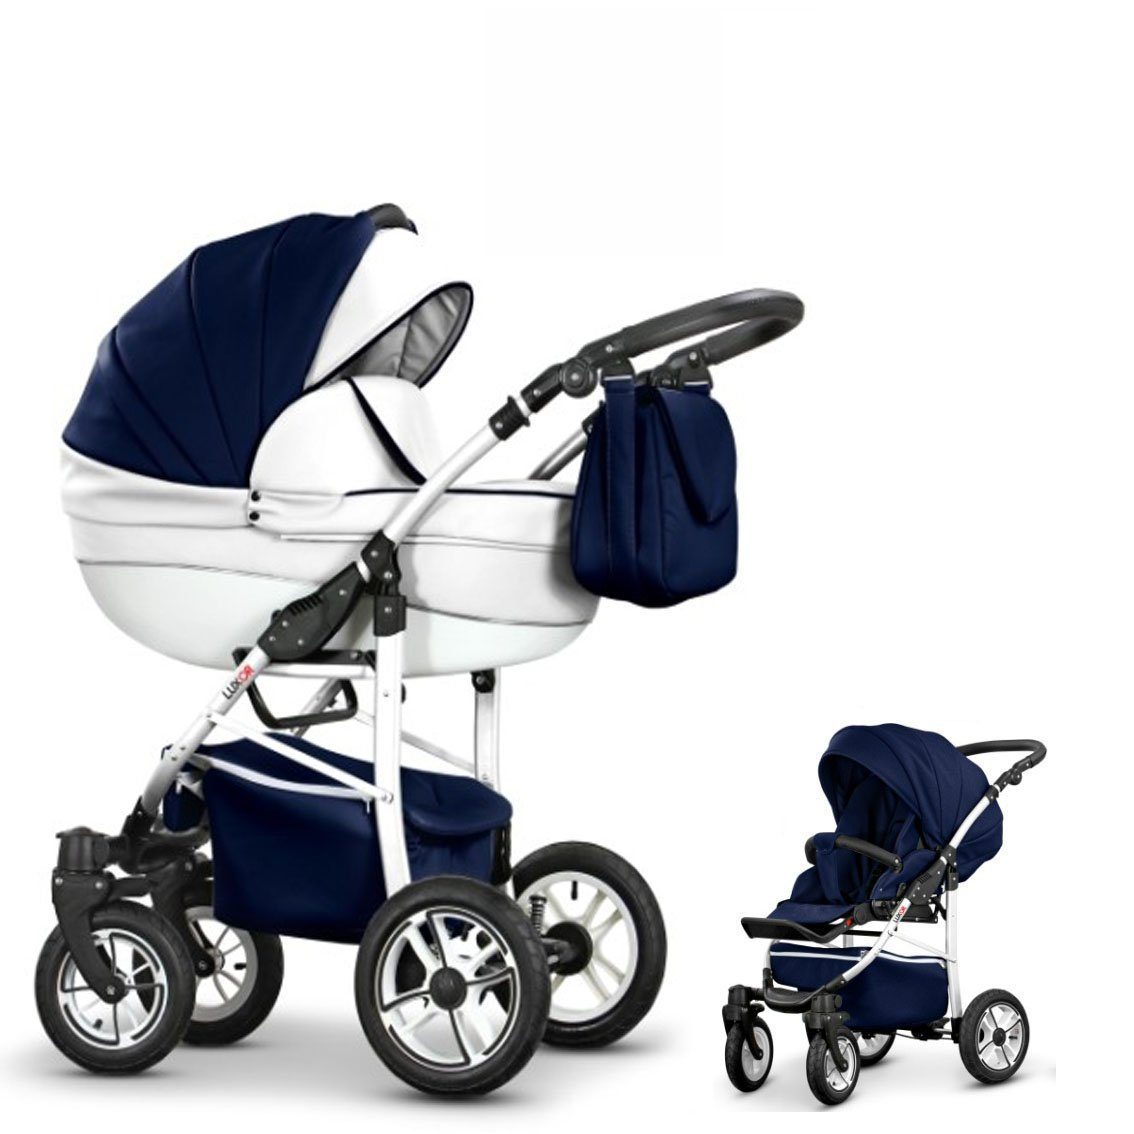 babies-on-wheels - Teile Kunstleder ECO - 2 in Kinderwagen-Set Navy-Weiß Cosmo in 16 Farben 1 13 Kombi-Kinderwagen